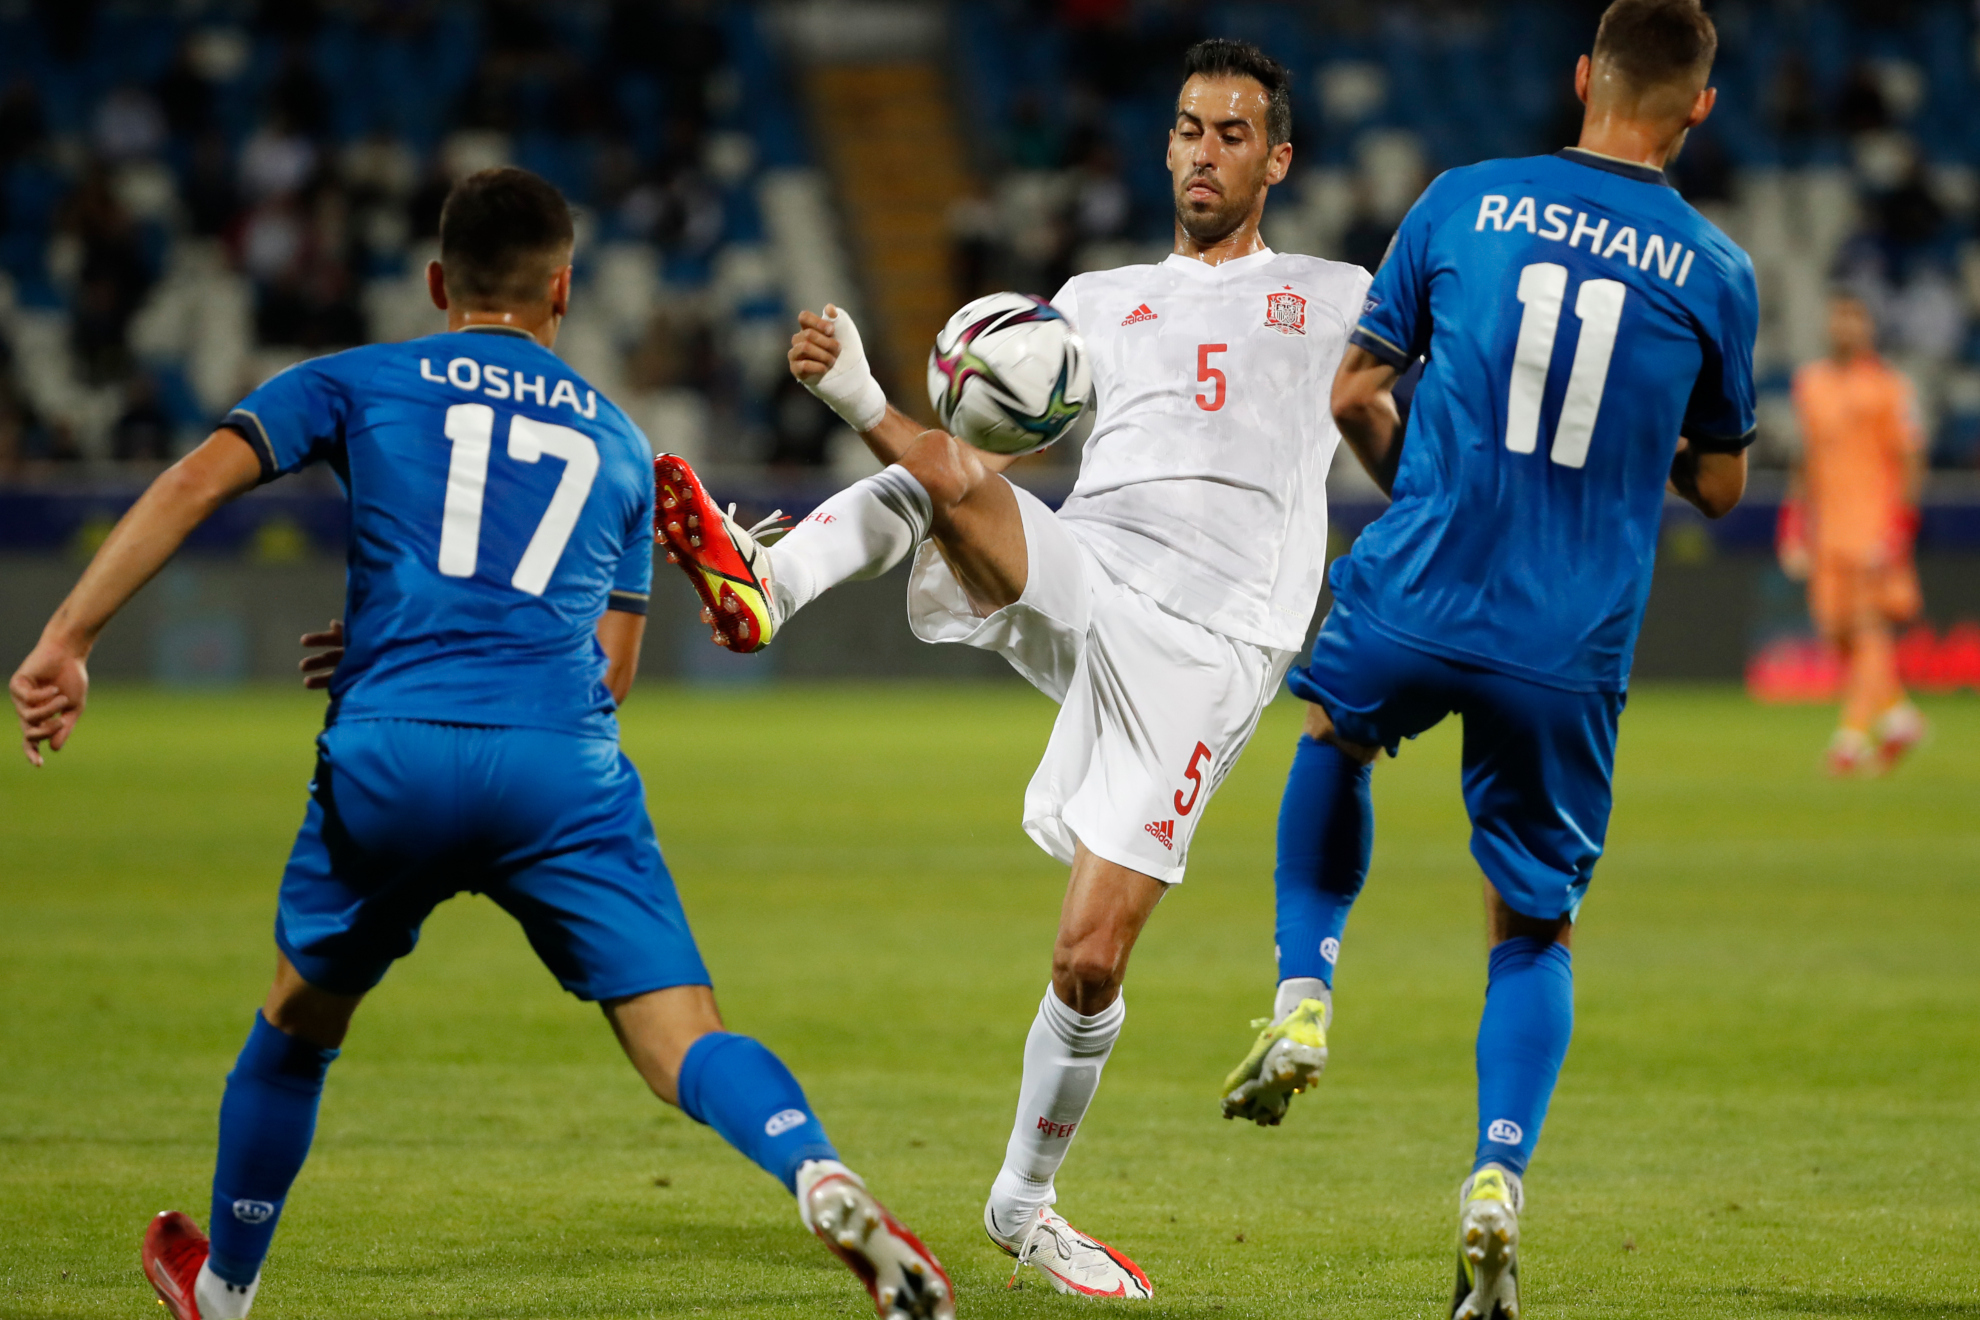 Busquets controla la pelota en uno de los partidos contra Kosovo en la clasificación para el Mundial. / P. GARCÍA